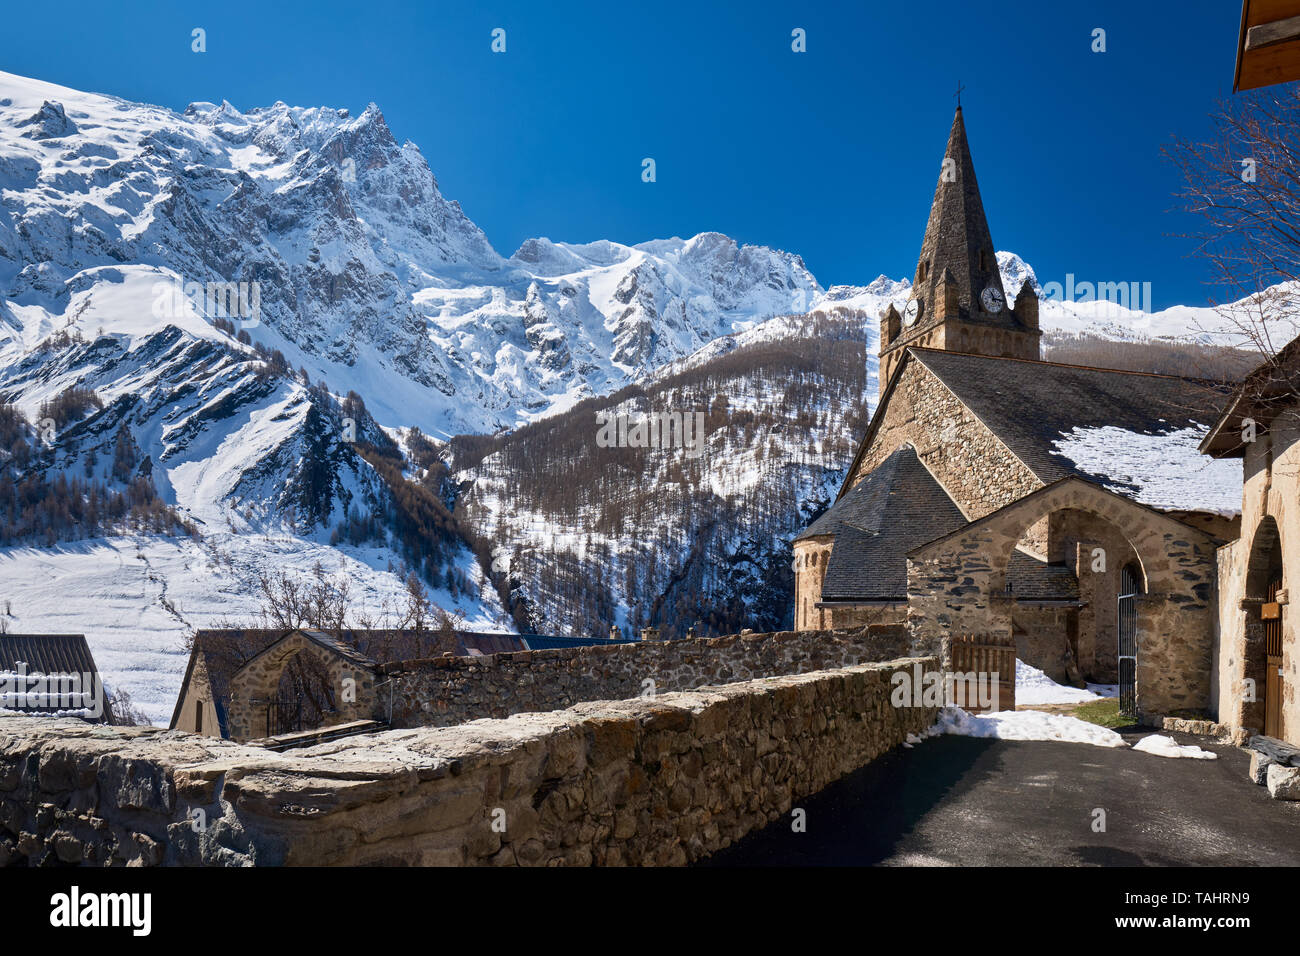 Francia, Hautes-Alpes, (05), la tomba, Parco Nazionale degli Ecrins - La chiesa di Notre Dame de l'Assomption de la tomba in inverno con vista su La Meije Peak Foto Stock